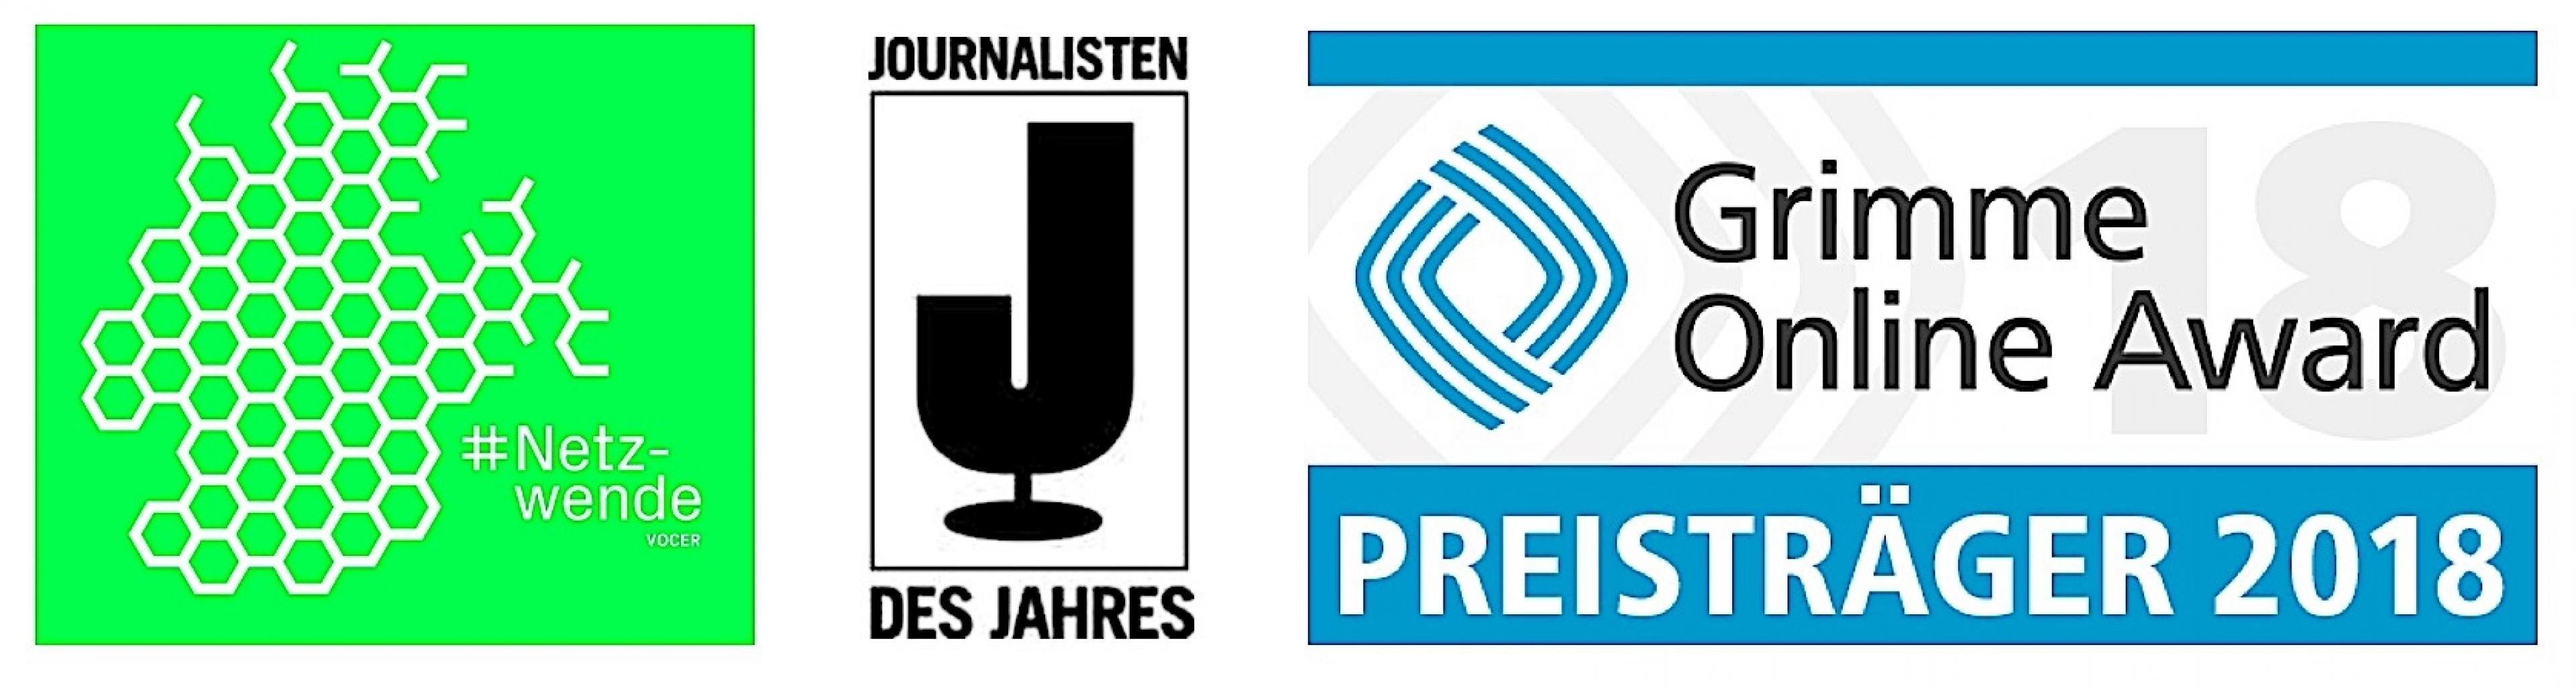 Die Logos der Preise die RiffReporter erhalten hat: Netzwende-Award, Journalisten des Jahres, Grimme Online Award.